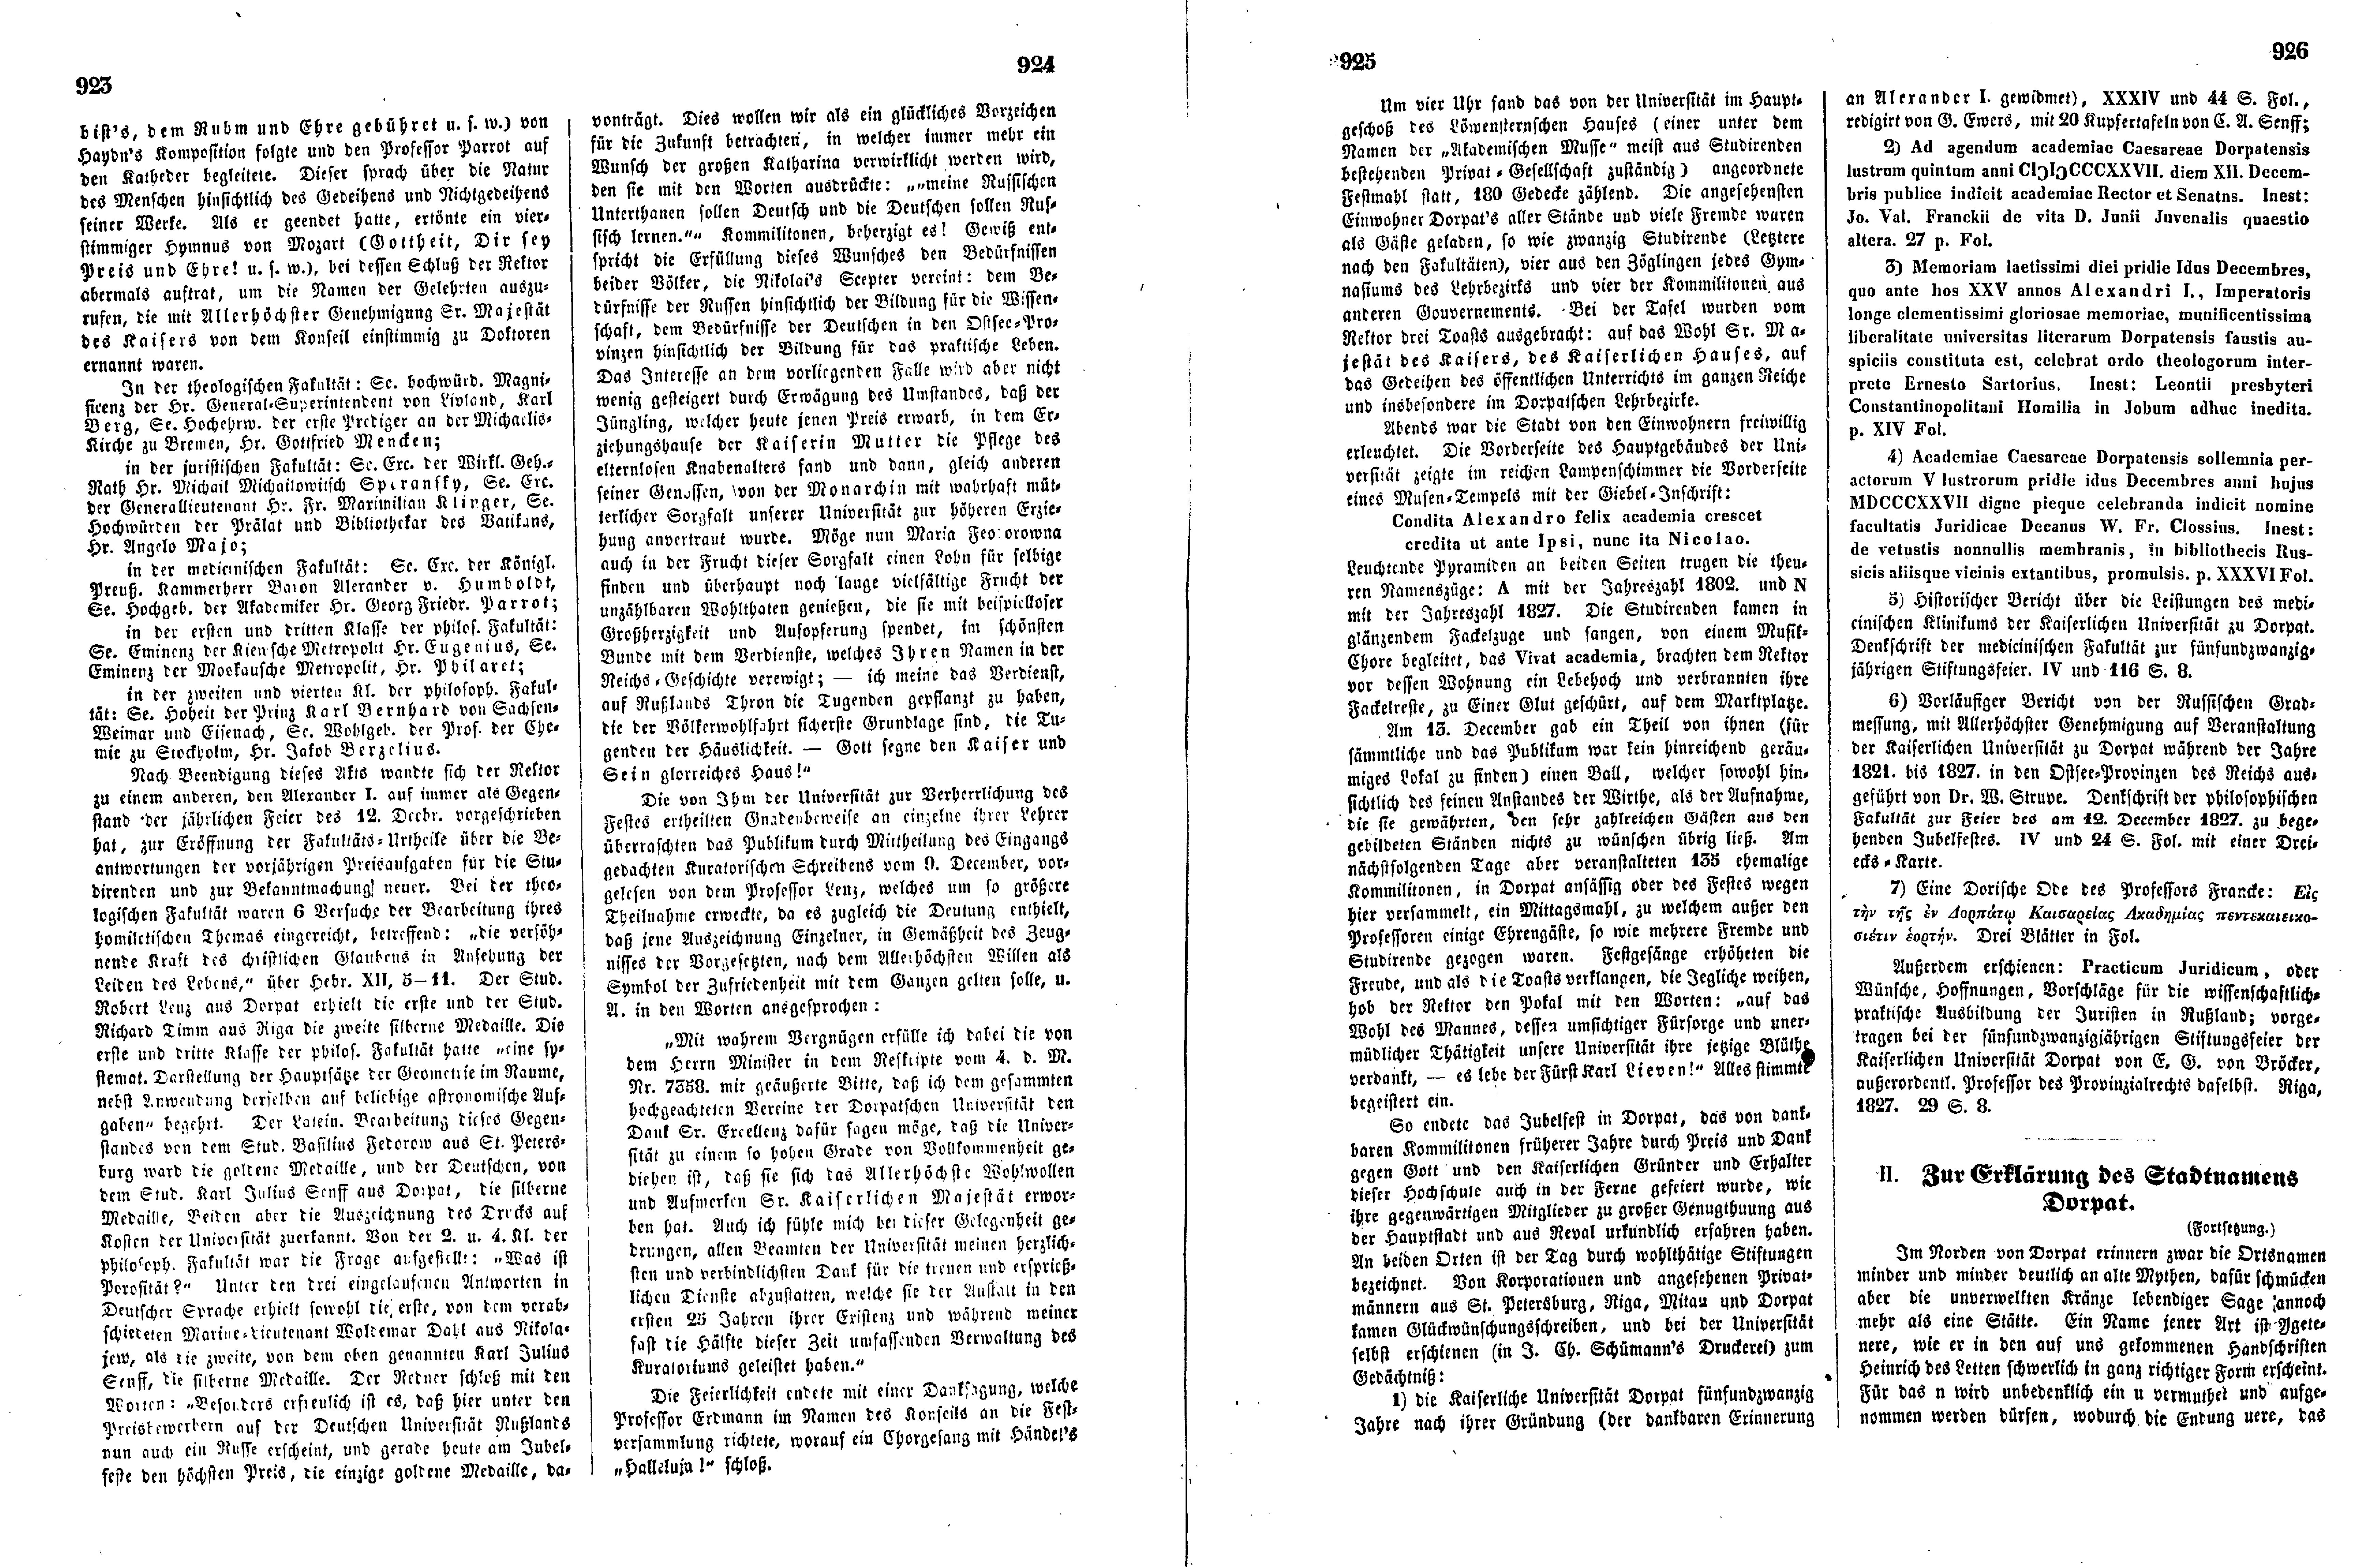 Das Inland [17] (1852) | 236. (923-926) Haupttext